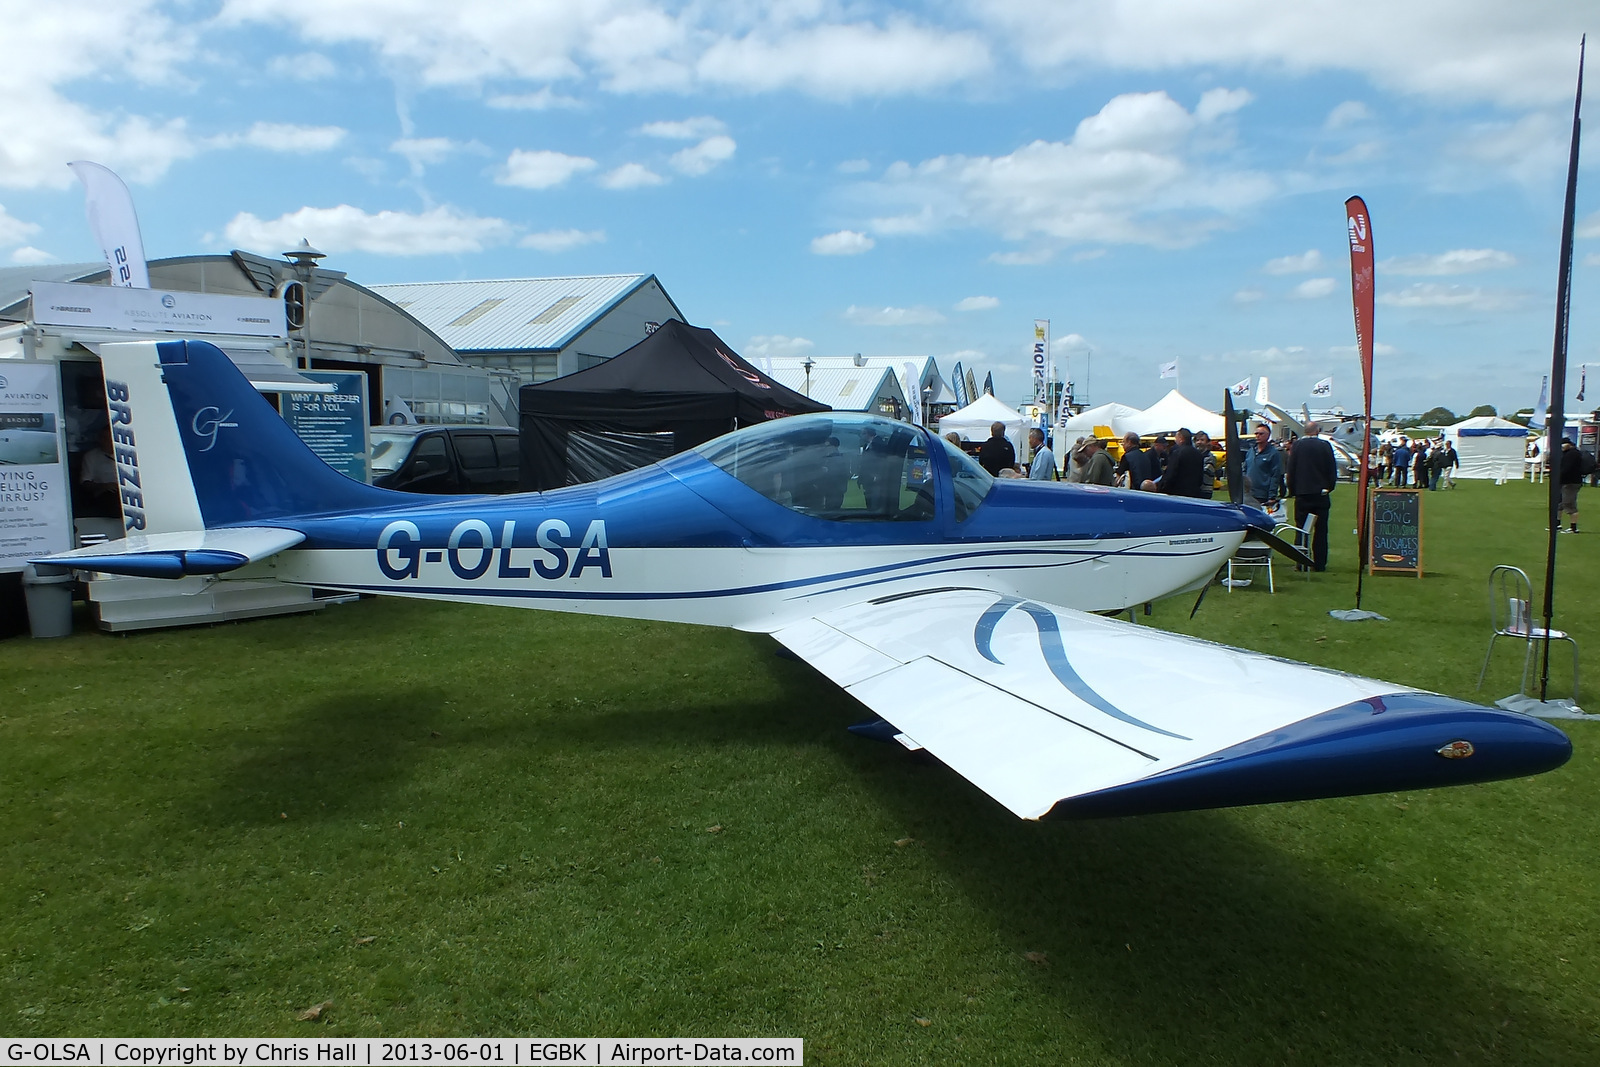 G-OLSA, 2010 Aerostyle B600 C/N 014LSA, at AeroExpo 2013